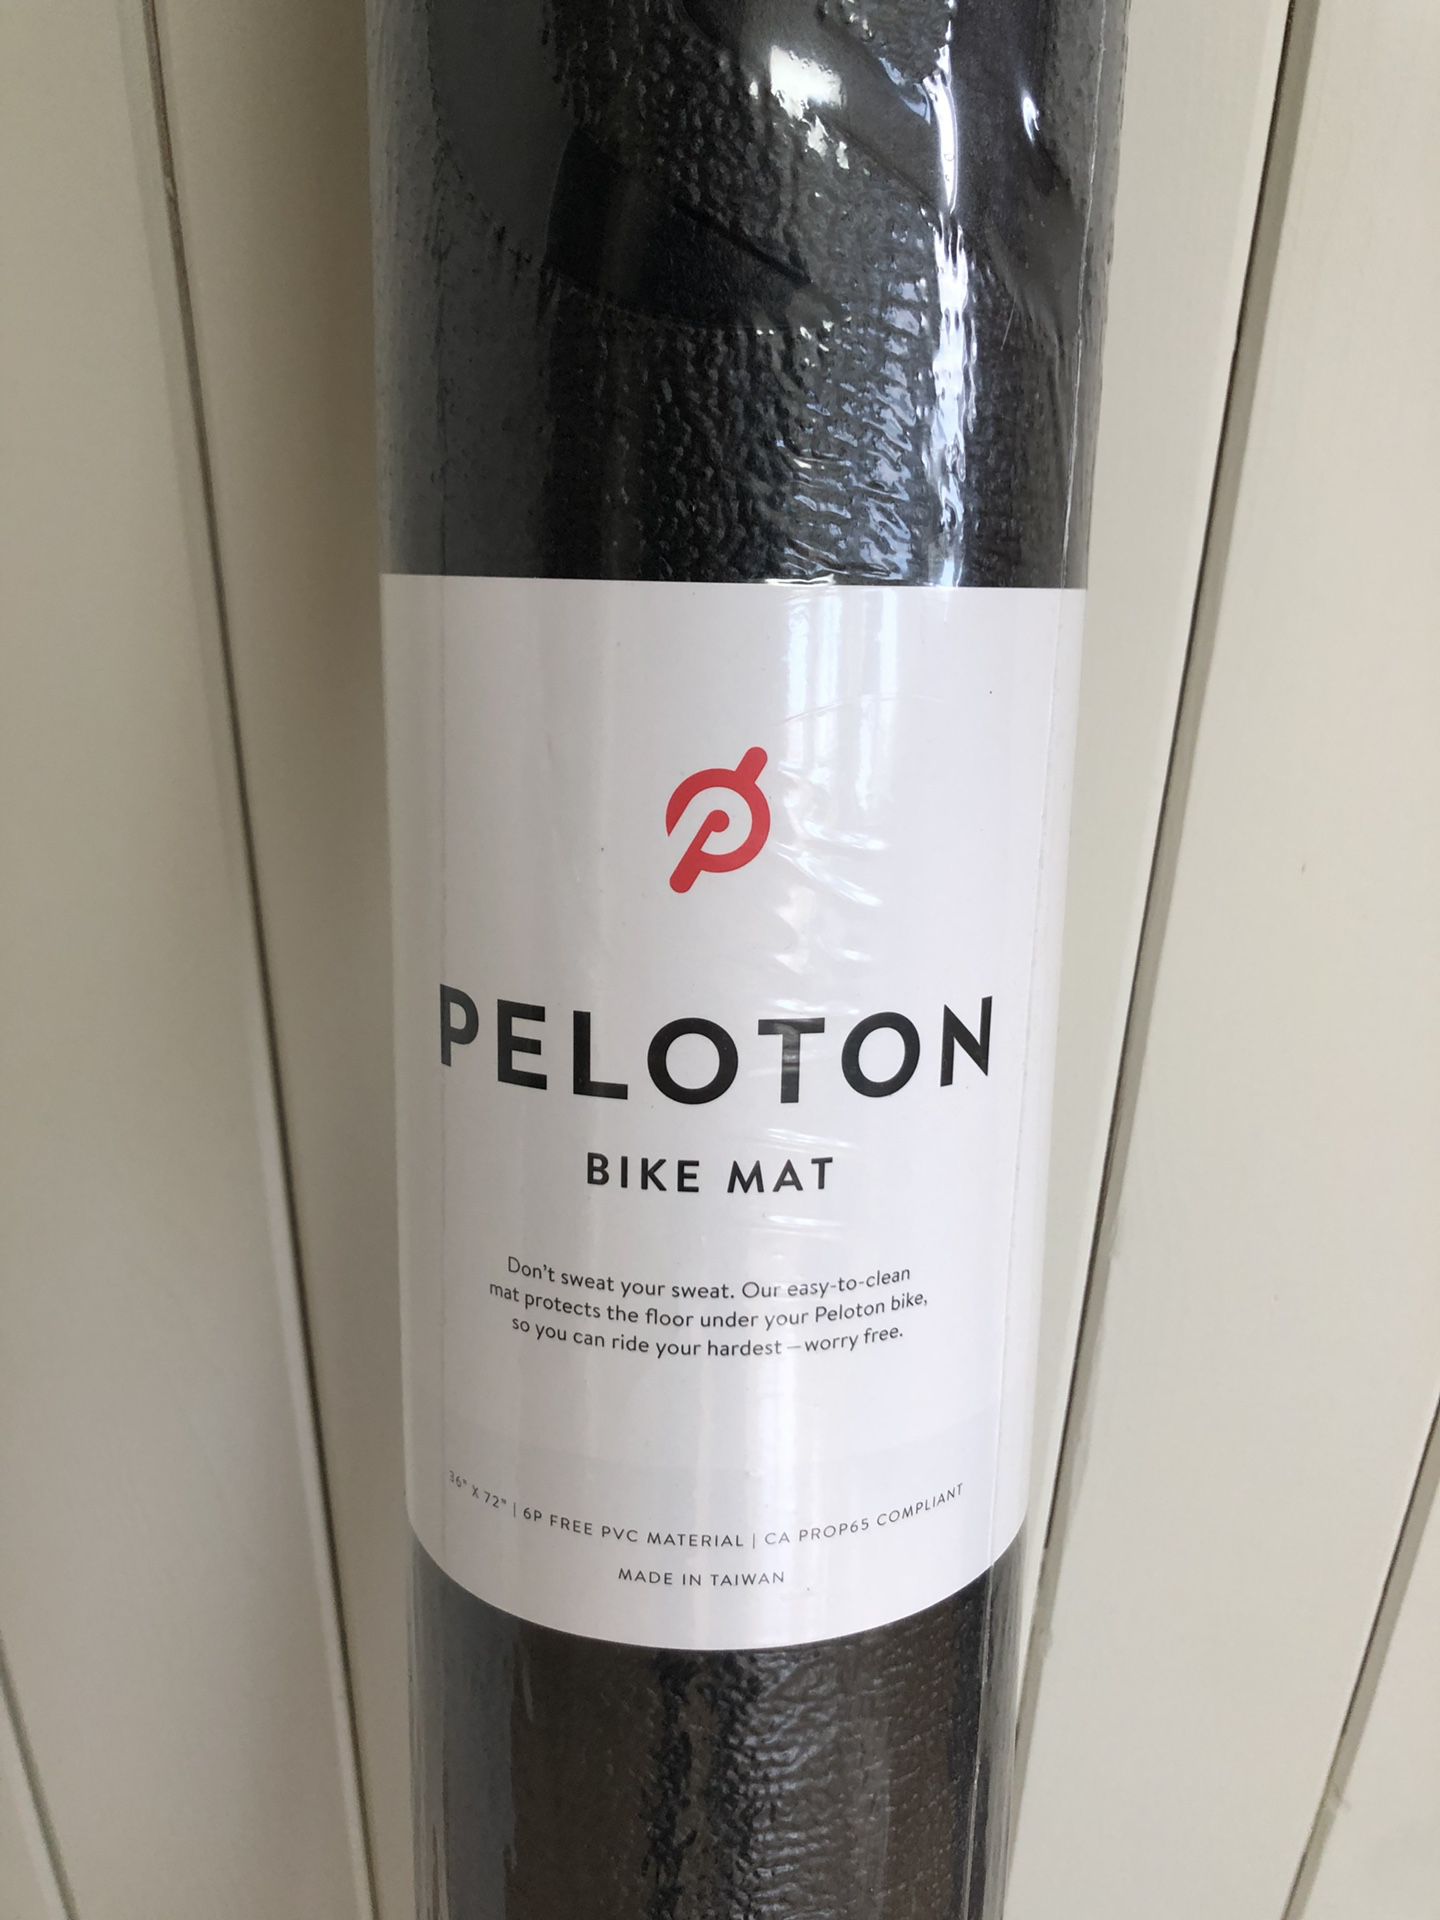 Pelton Bike Mat or Workout Mat